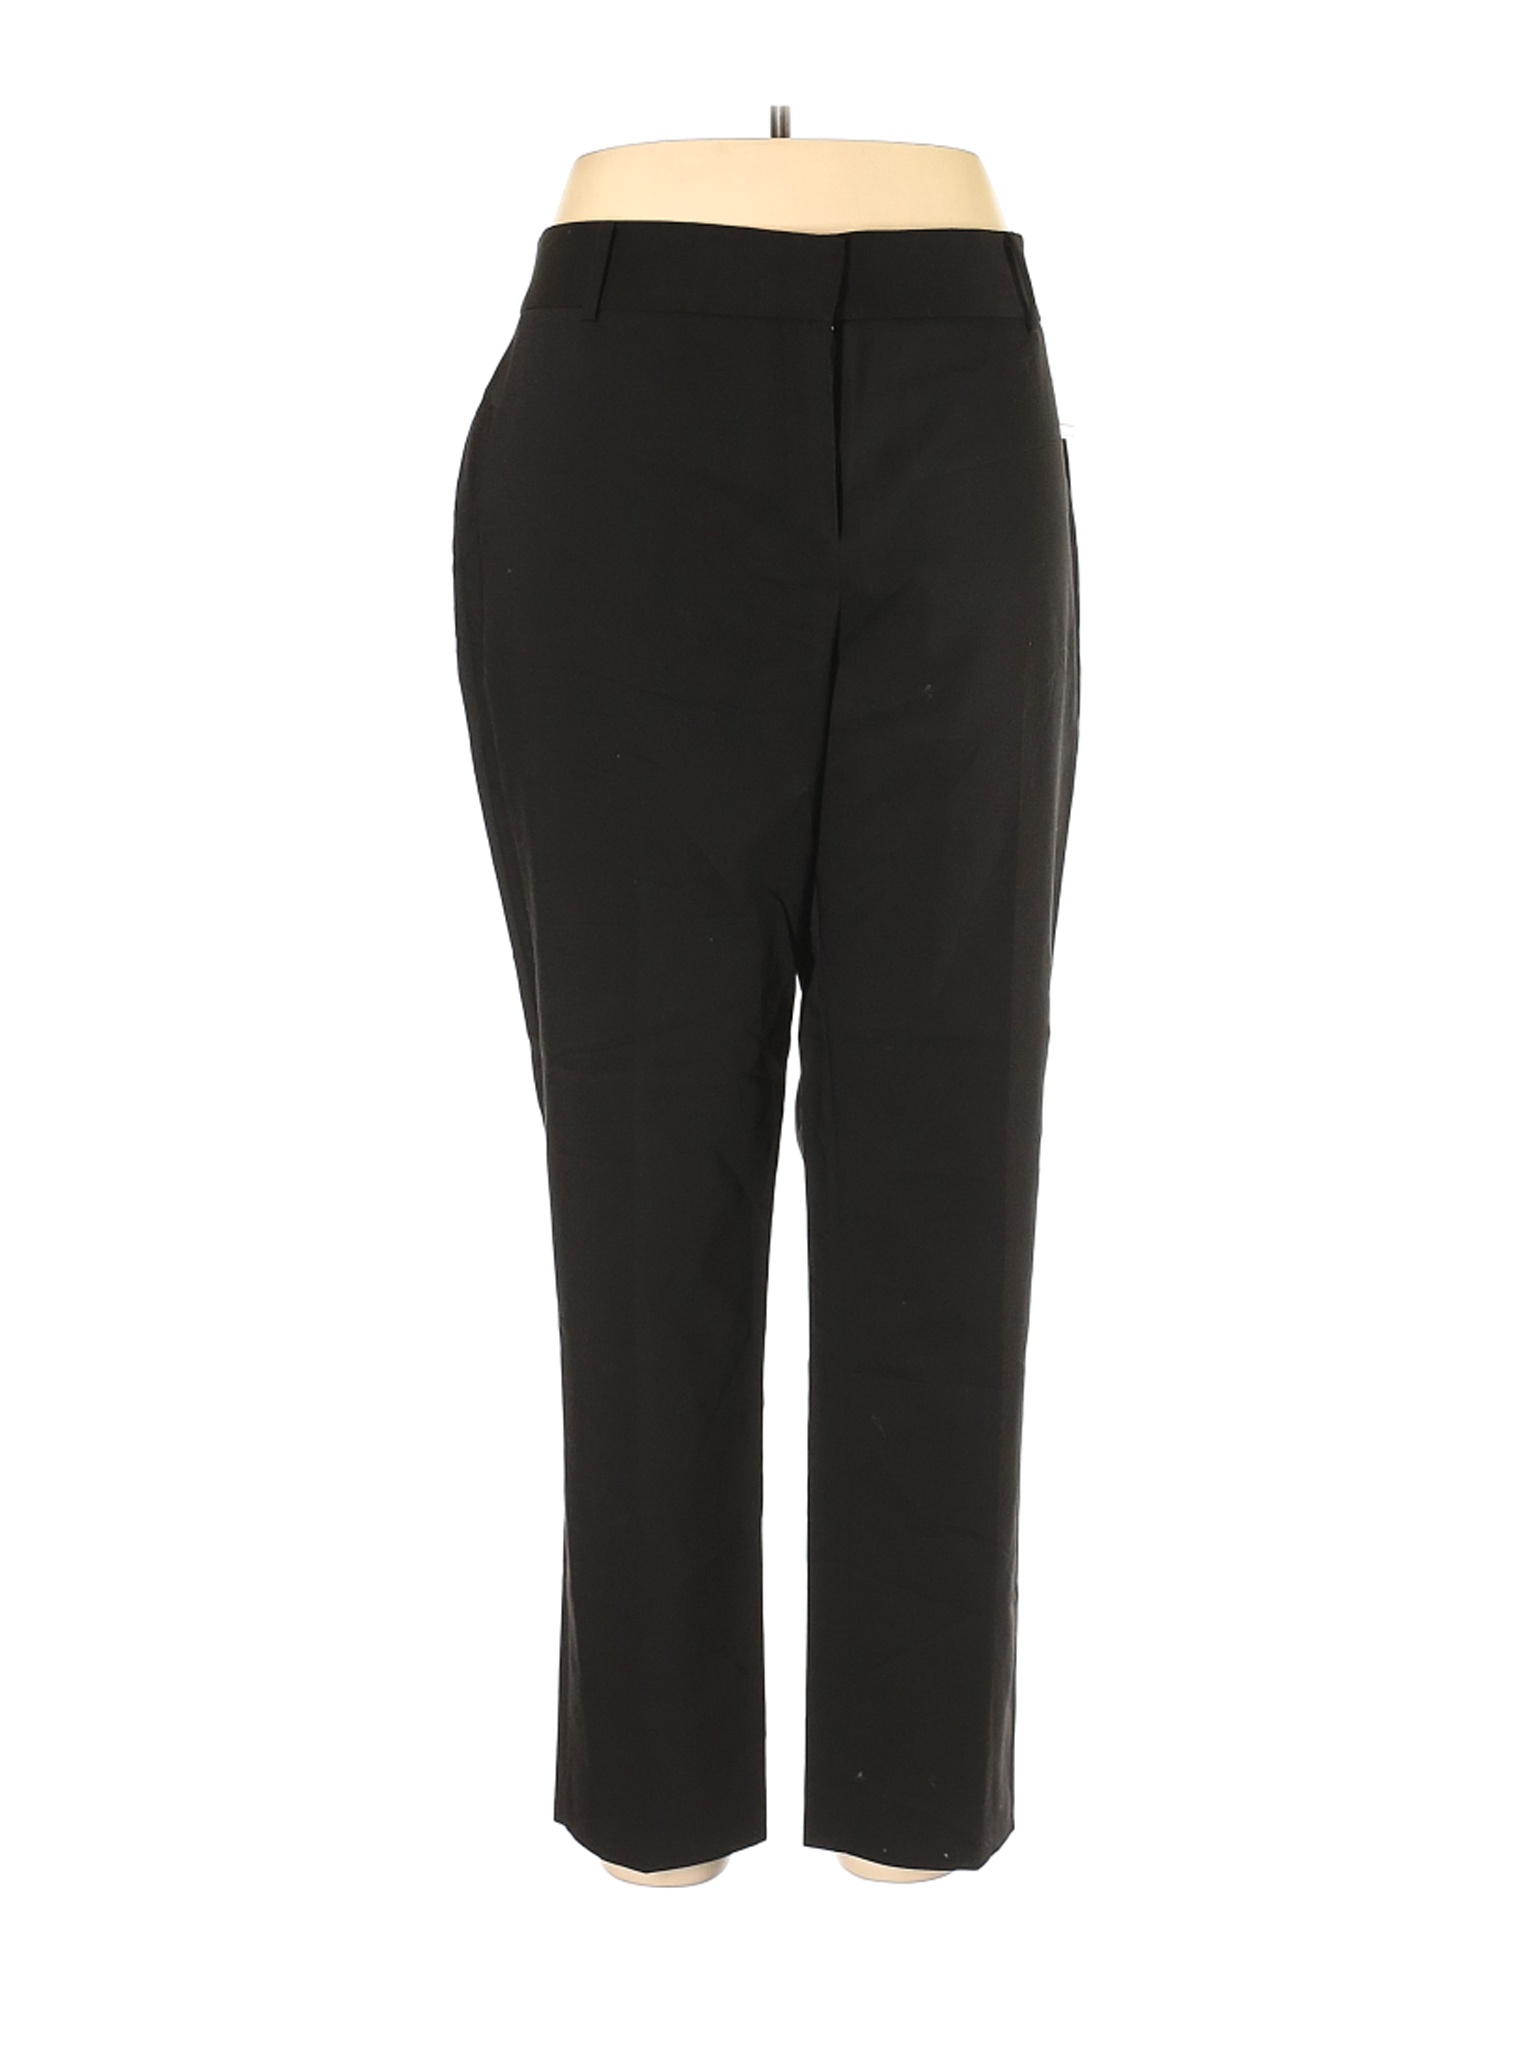 NWT Chaus Women Black Dress Pants 16 | eBay